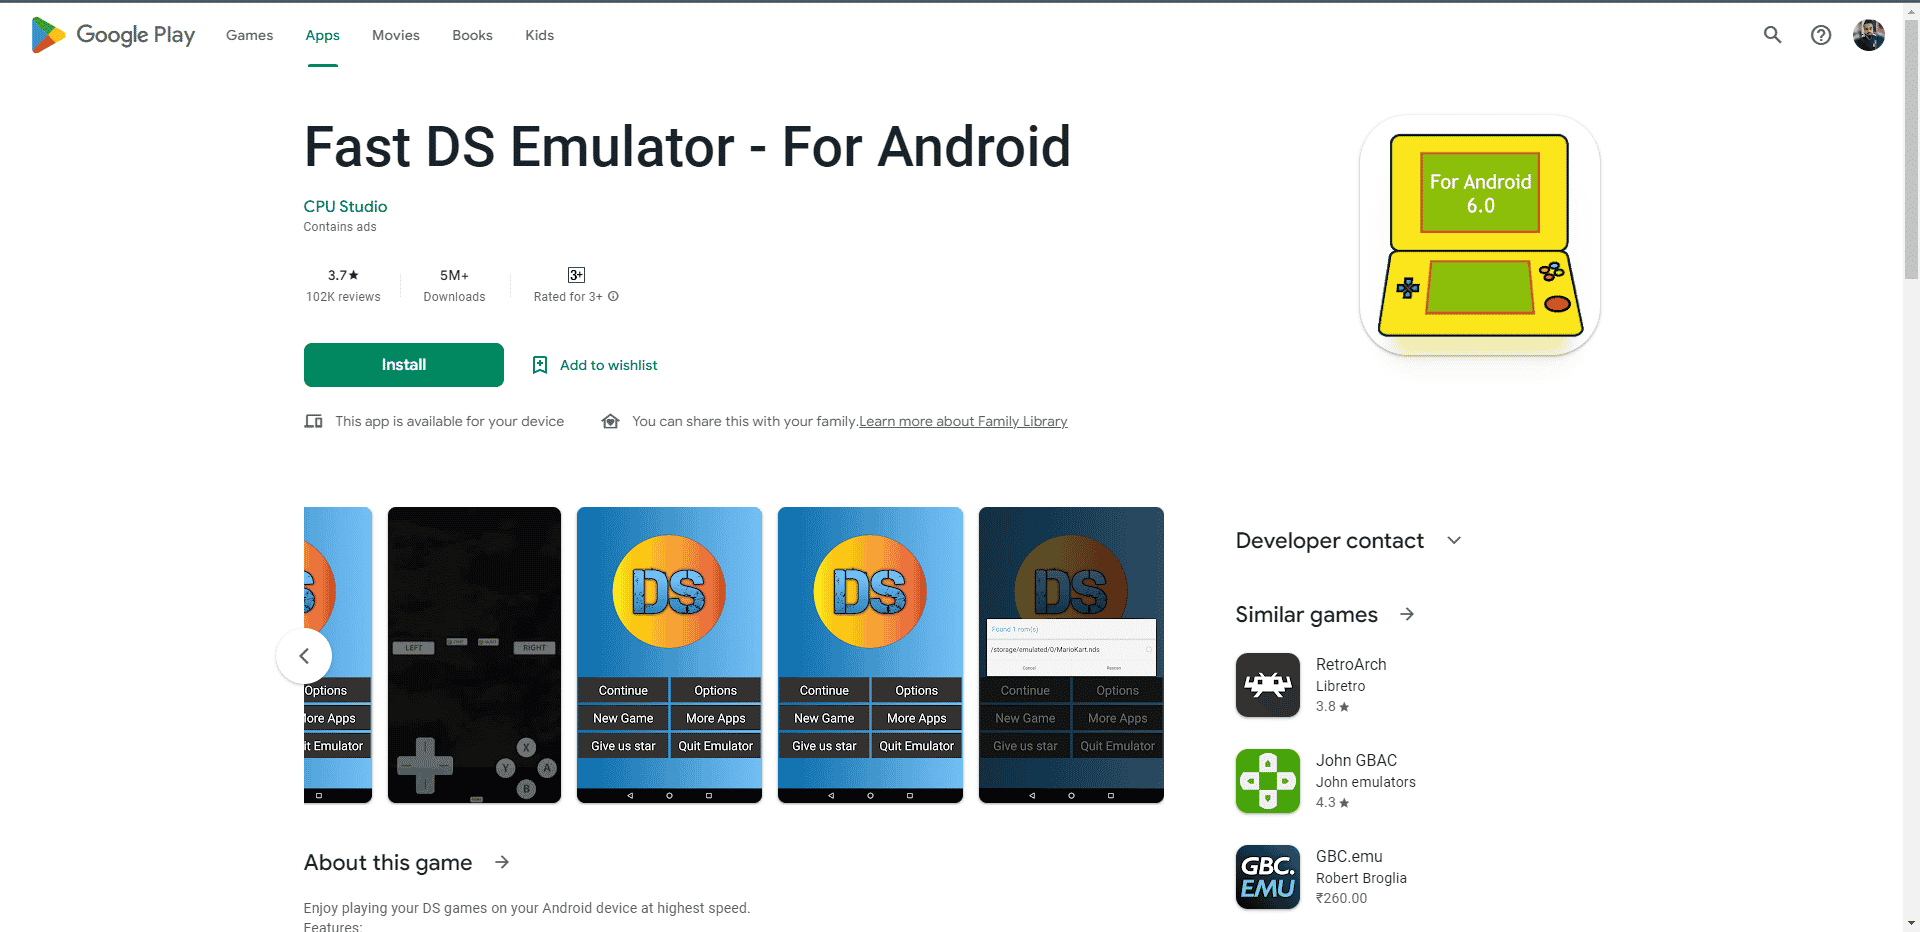 Hitra spletna stran Play Store emulatorja DS. Prenos najboljšega 3D emulatorja za Android APK